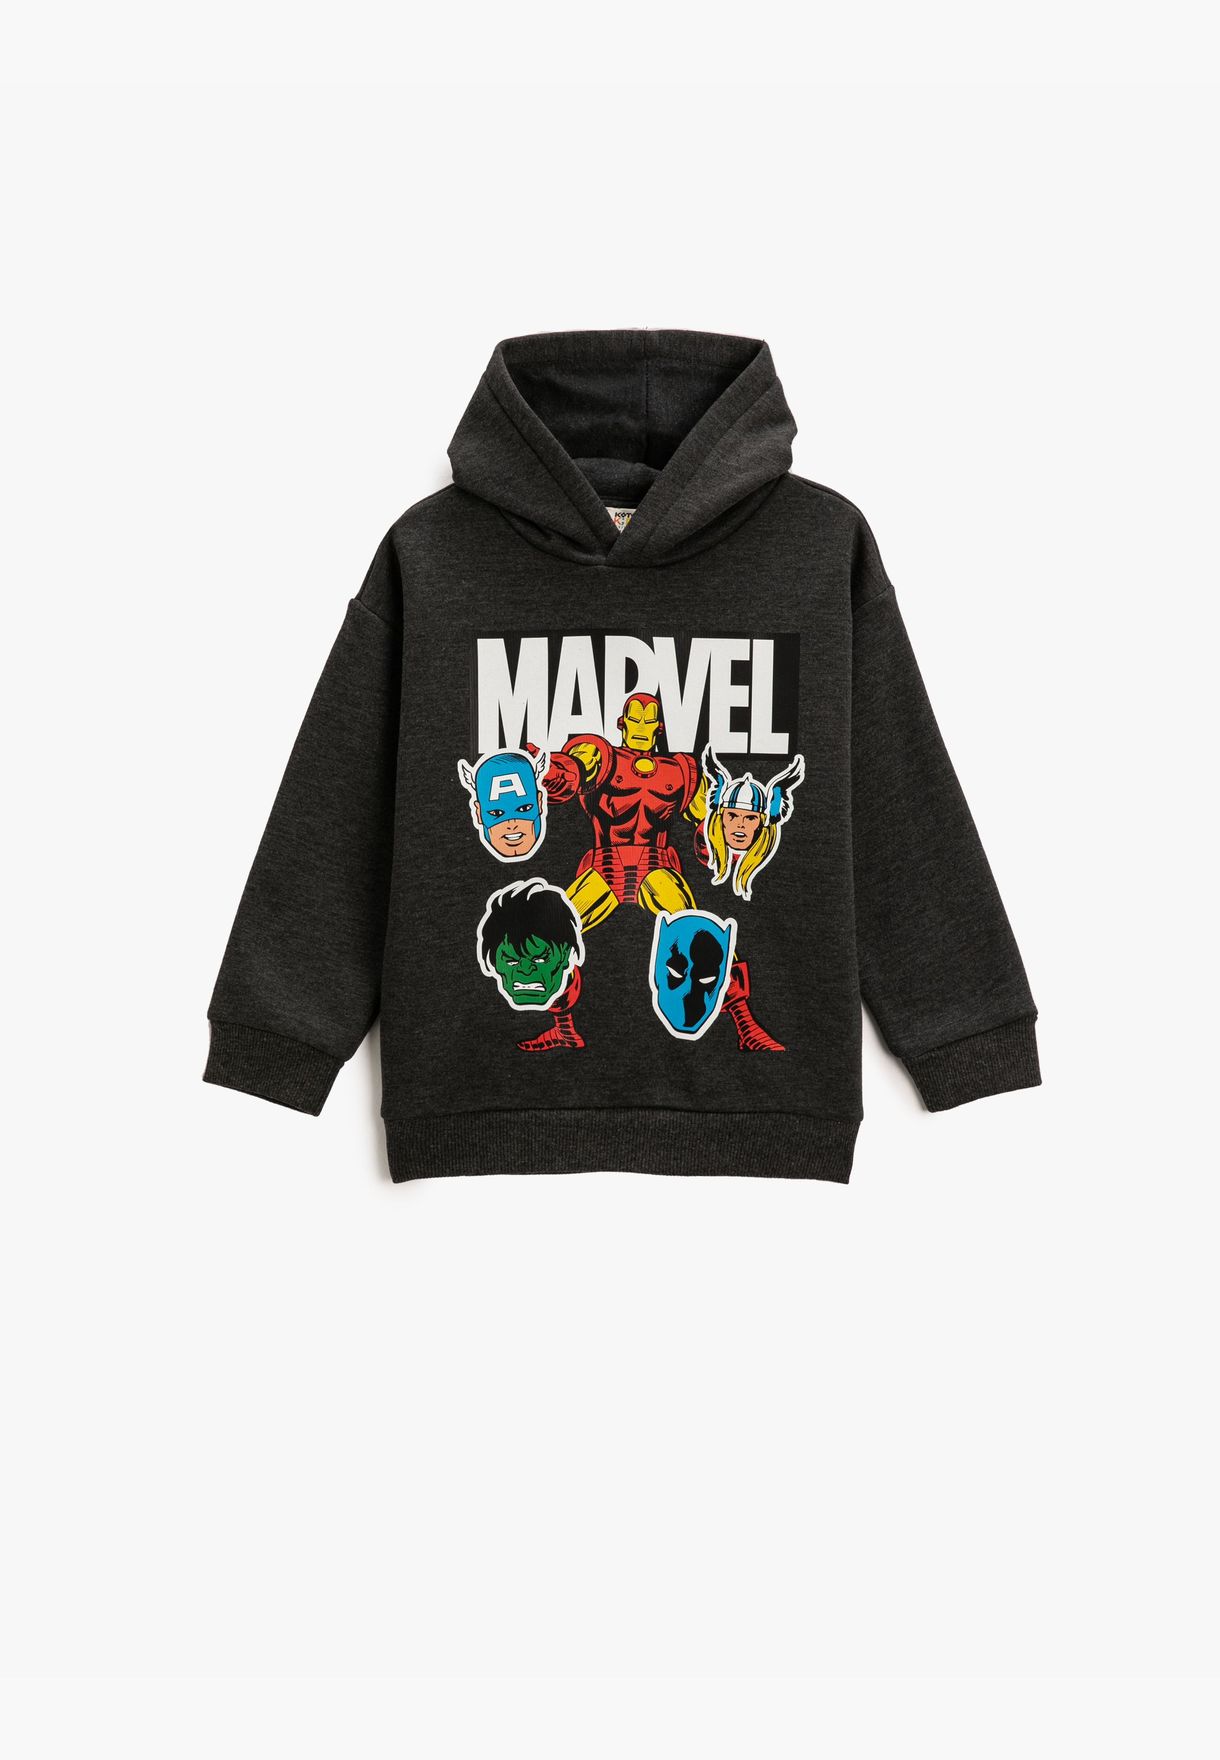 Marvel Printed Licensed Sweatshirt Hooded